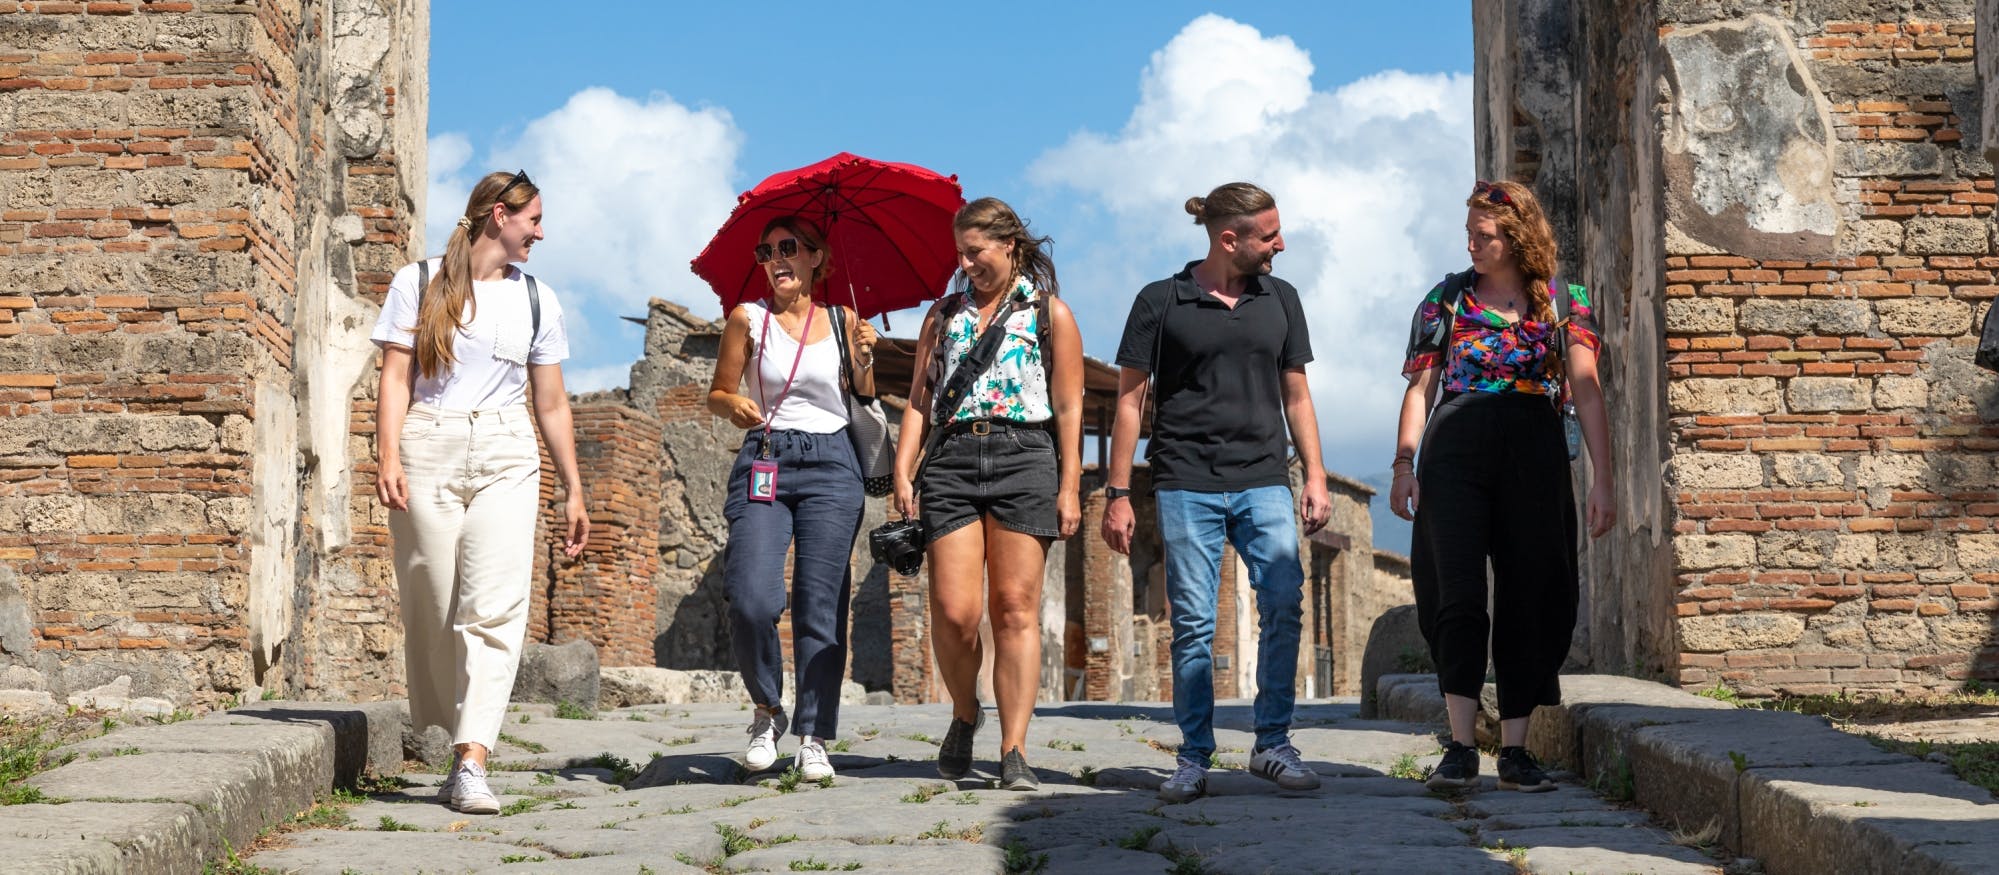 Ruïnes van Pompeii kleine groepstour met een lokale gids